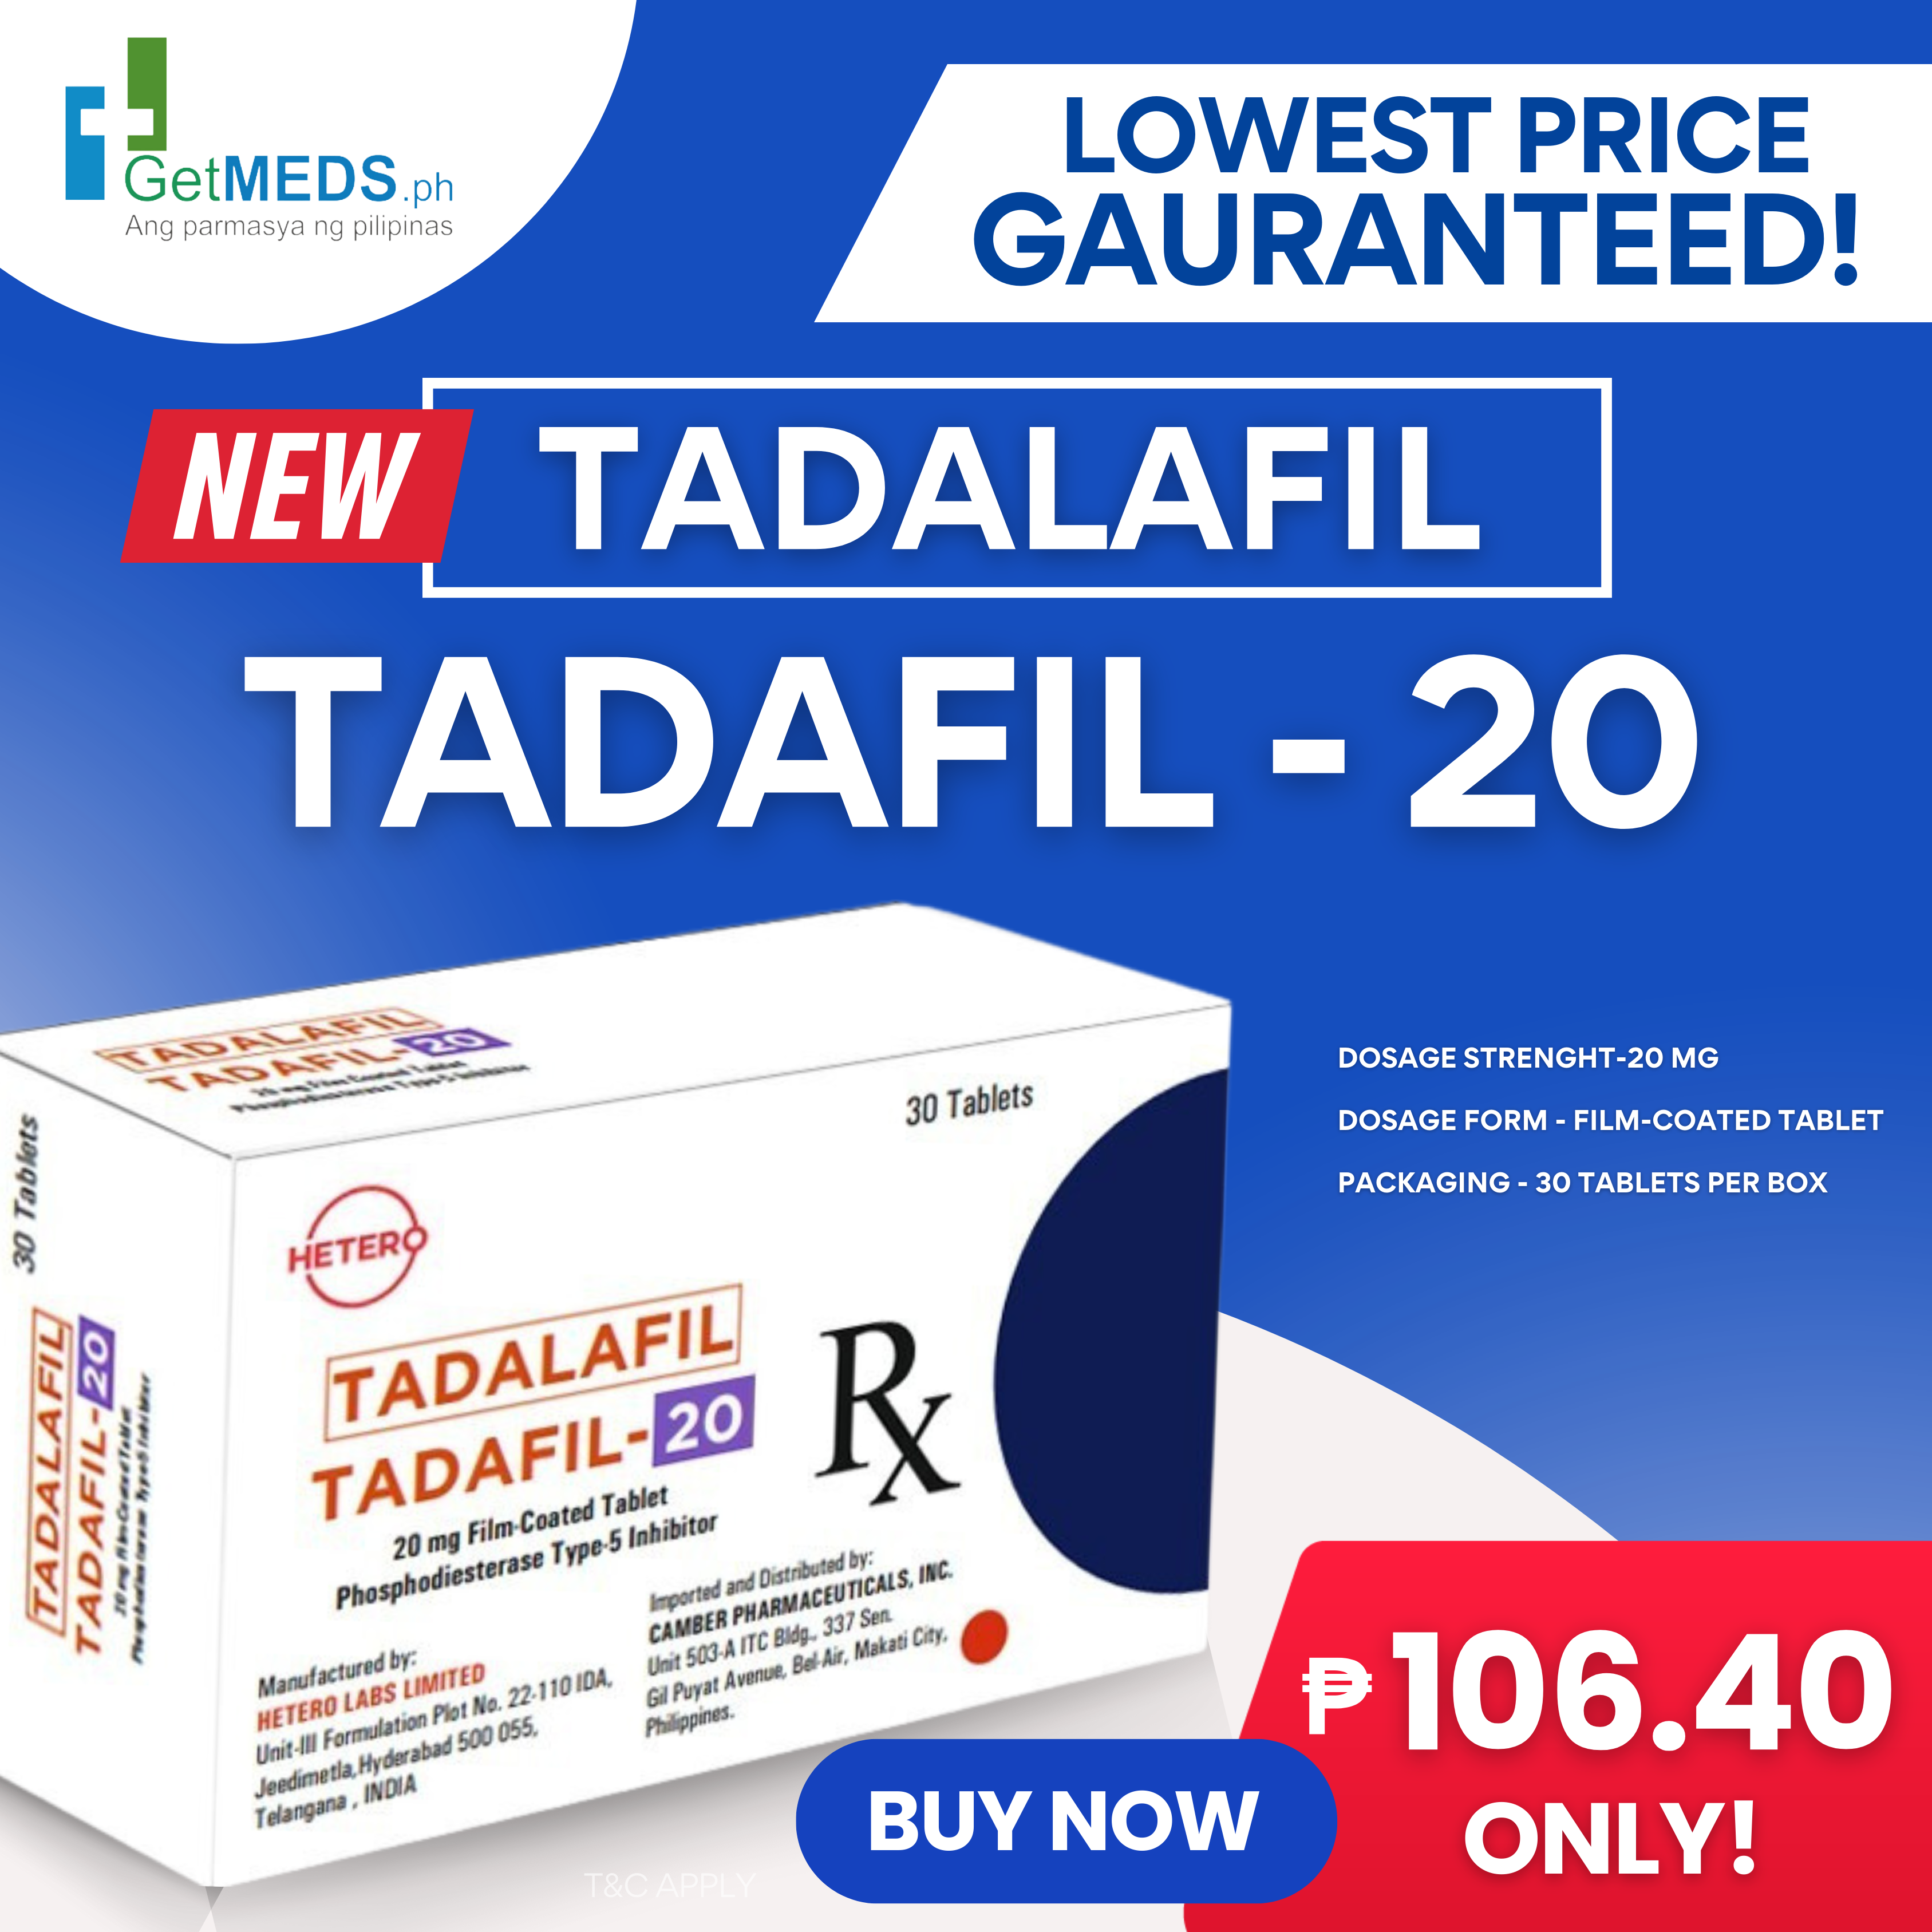 Tadalafil 20 mg tadafil online in philippines